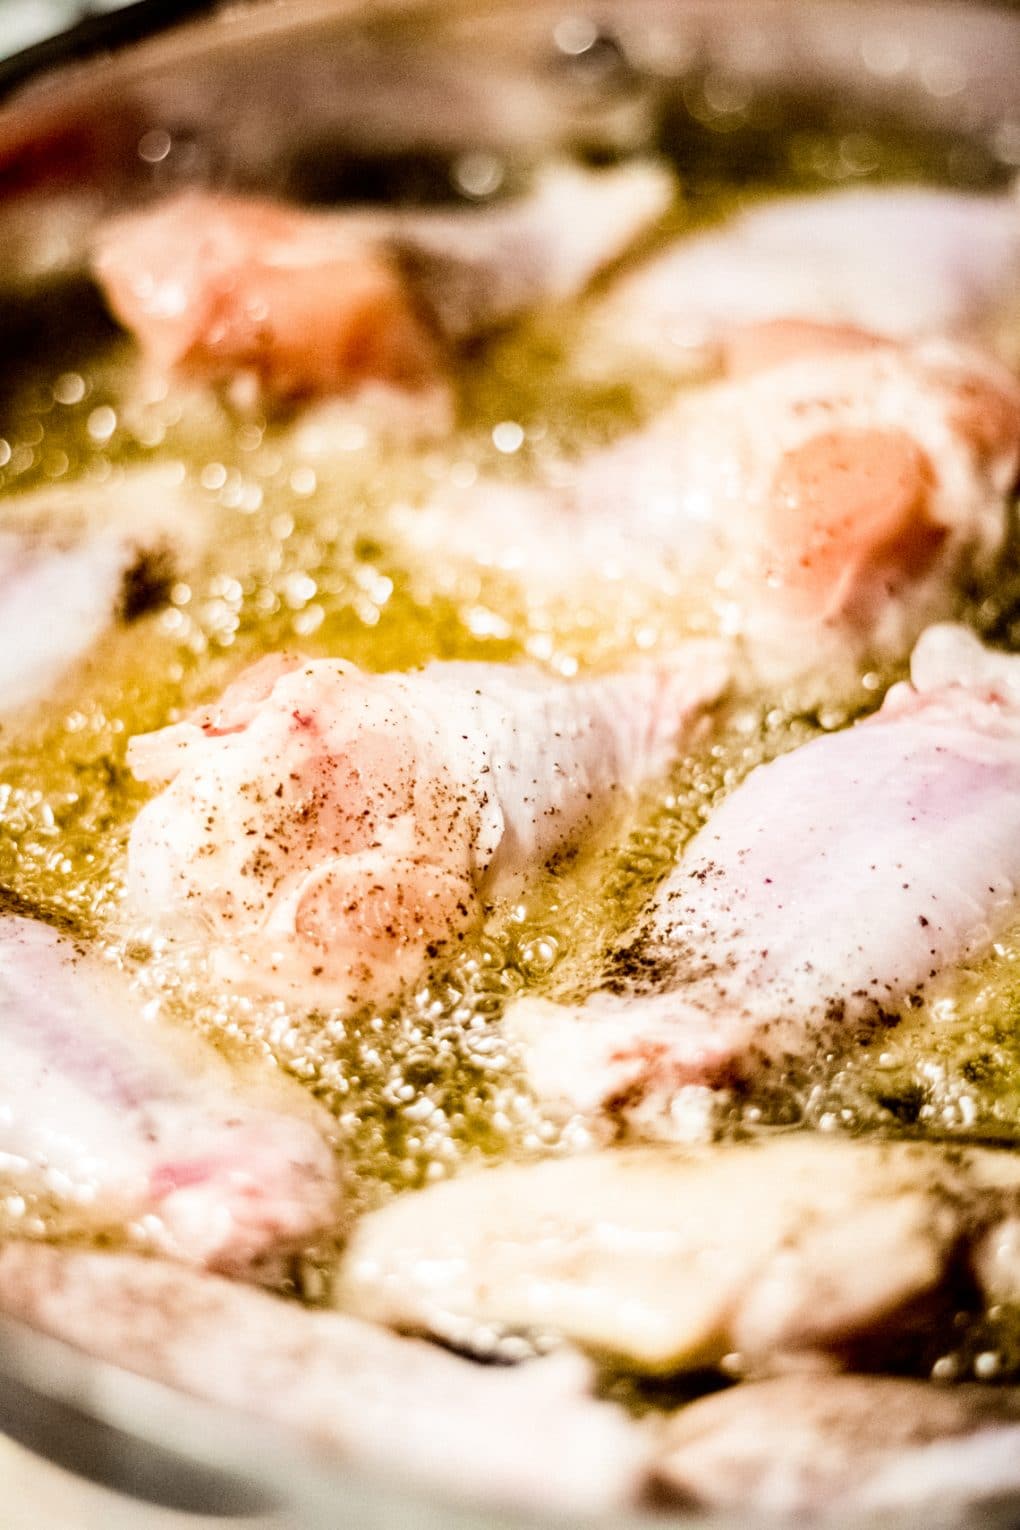 chicken wings pan frying in oil